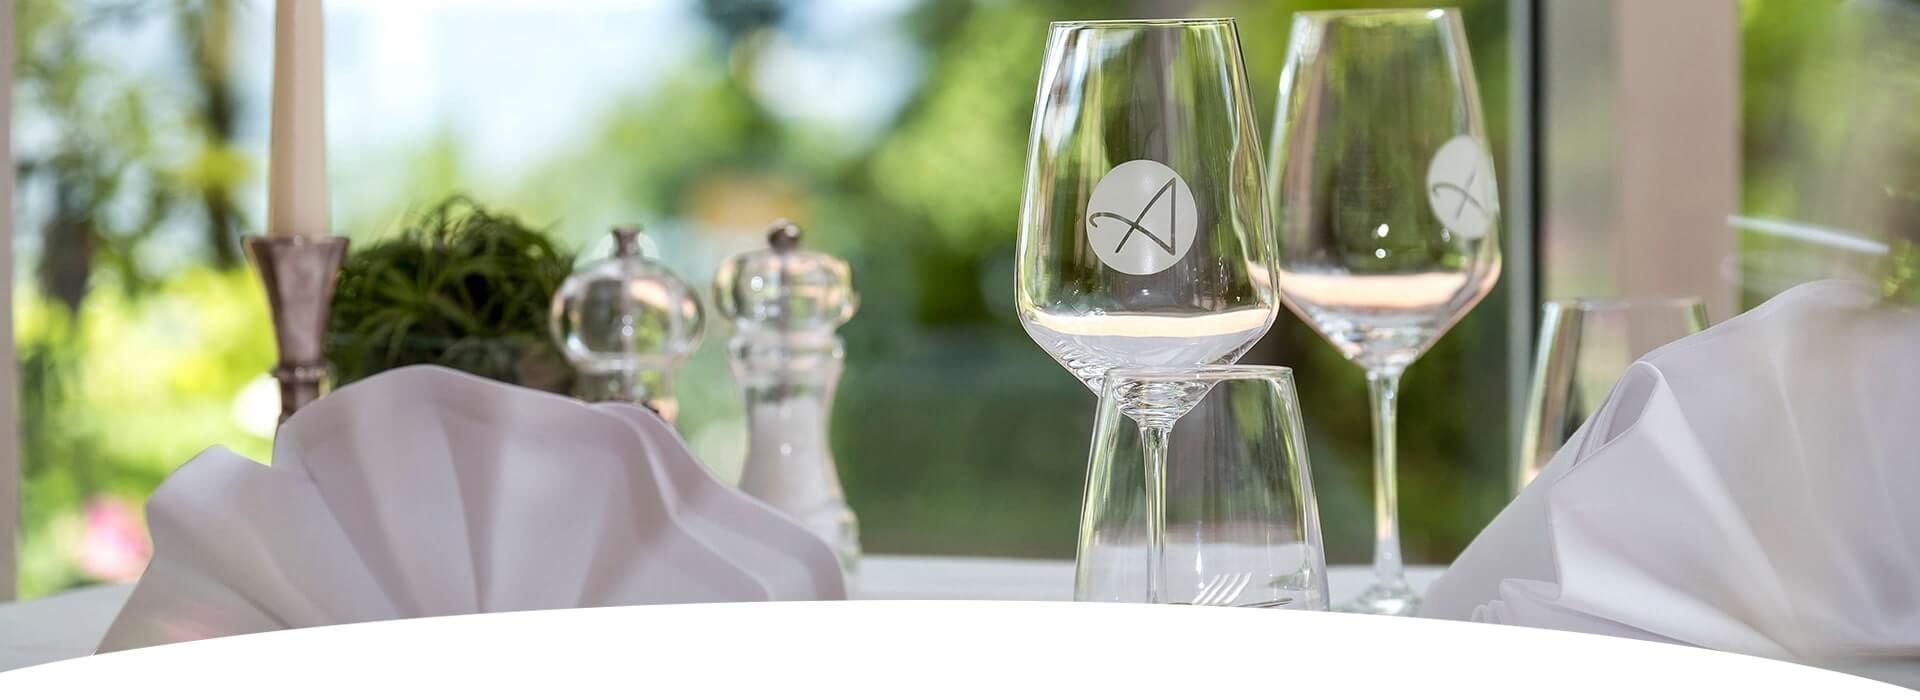 schön gedeckter Tisch mit Nahaufnahmen von den Weingläsern aus dem Hotel Hohe Wacht